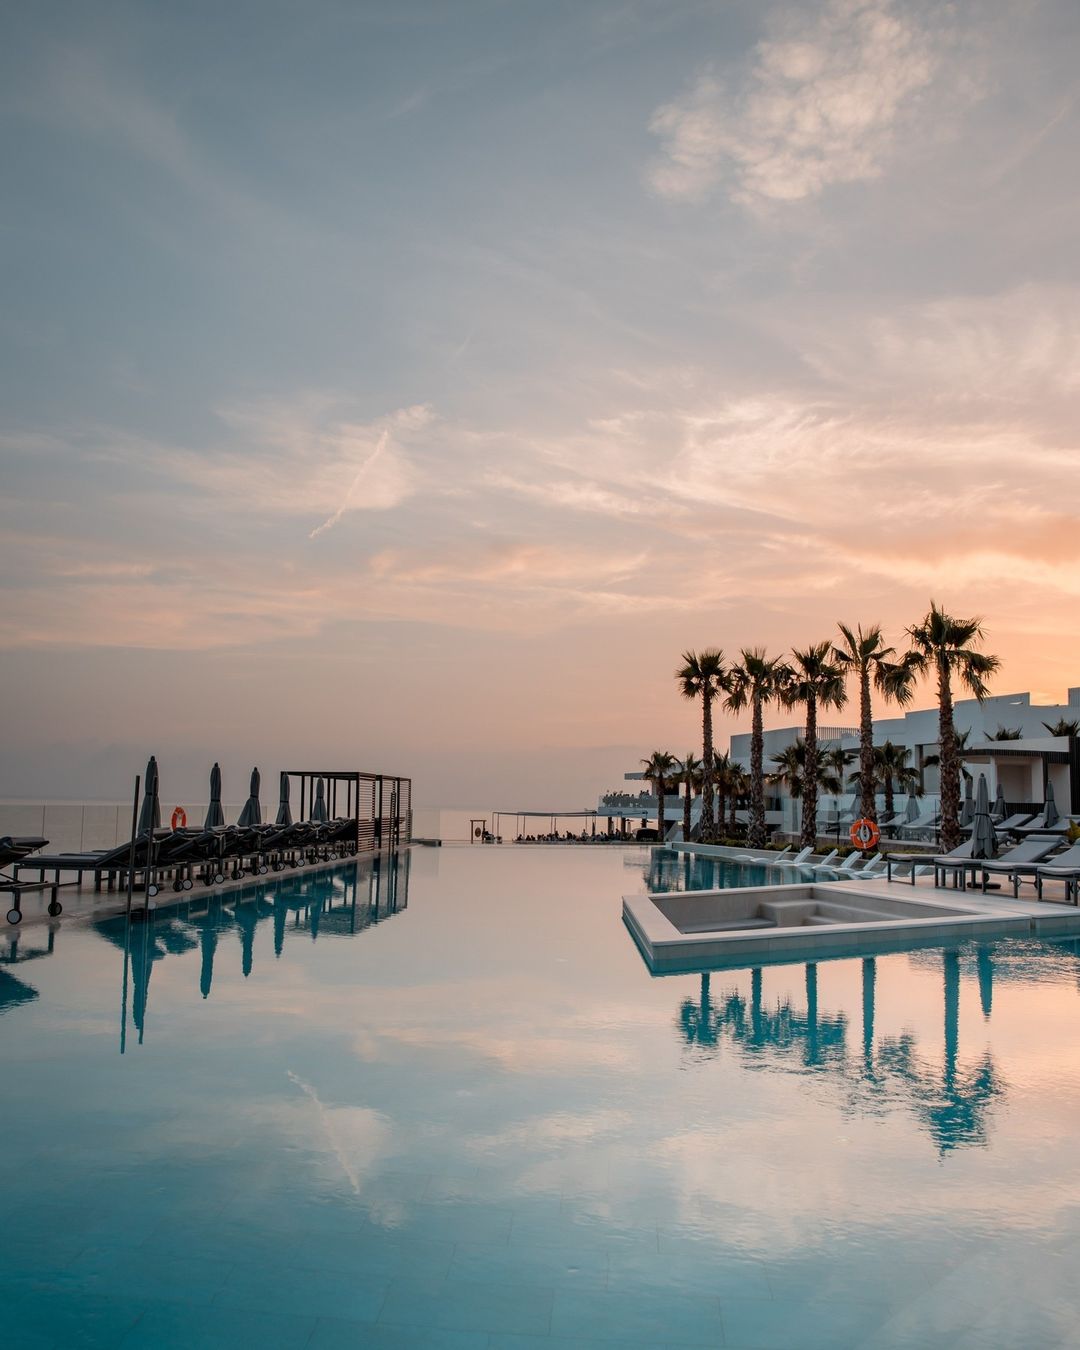 7 Pines Resort Ibiza